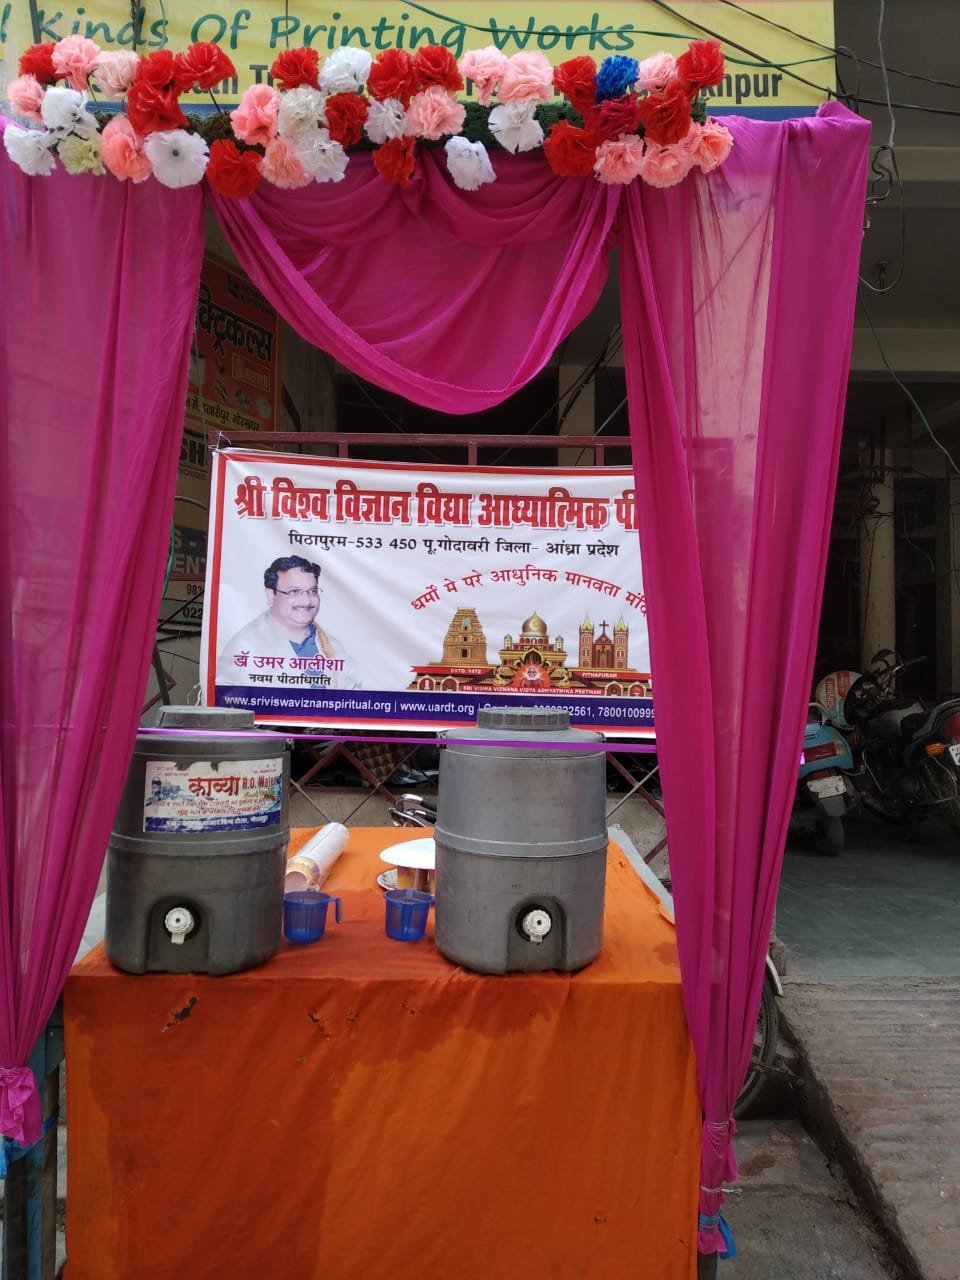 Chalivendram Opening by Gorakhpur Mayor Sitaram Jaiswal garu at Hajipur Main Bazaar, Uttar Pradesh